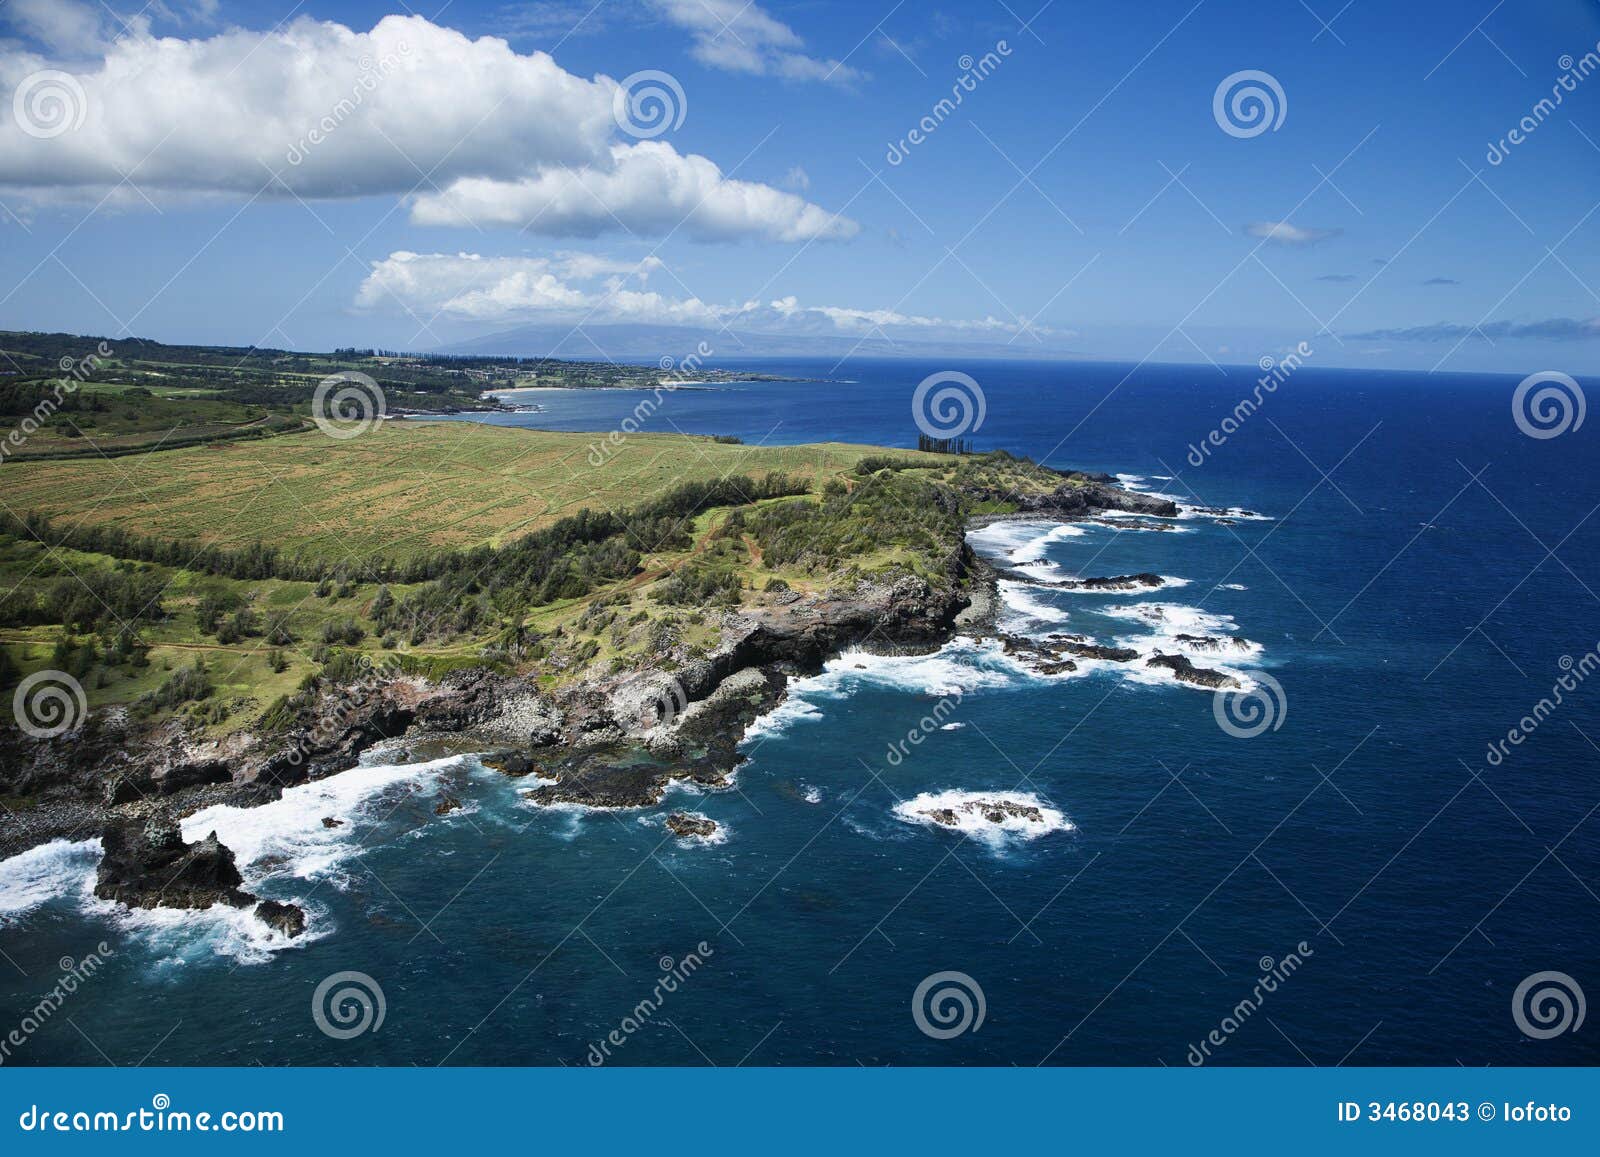 hawaii coastline.